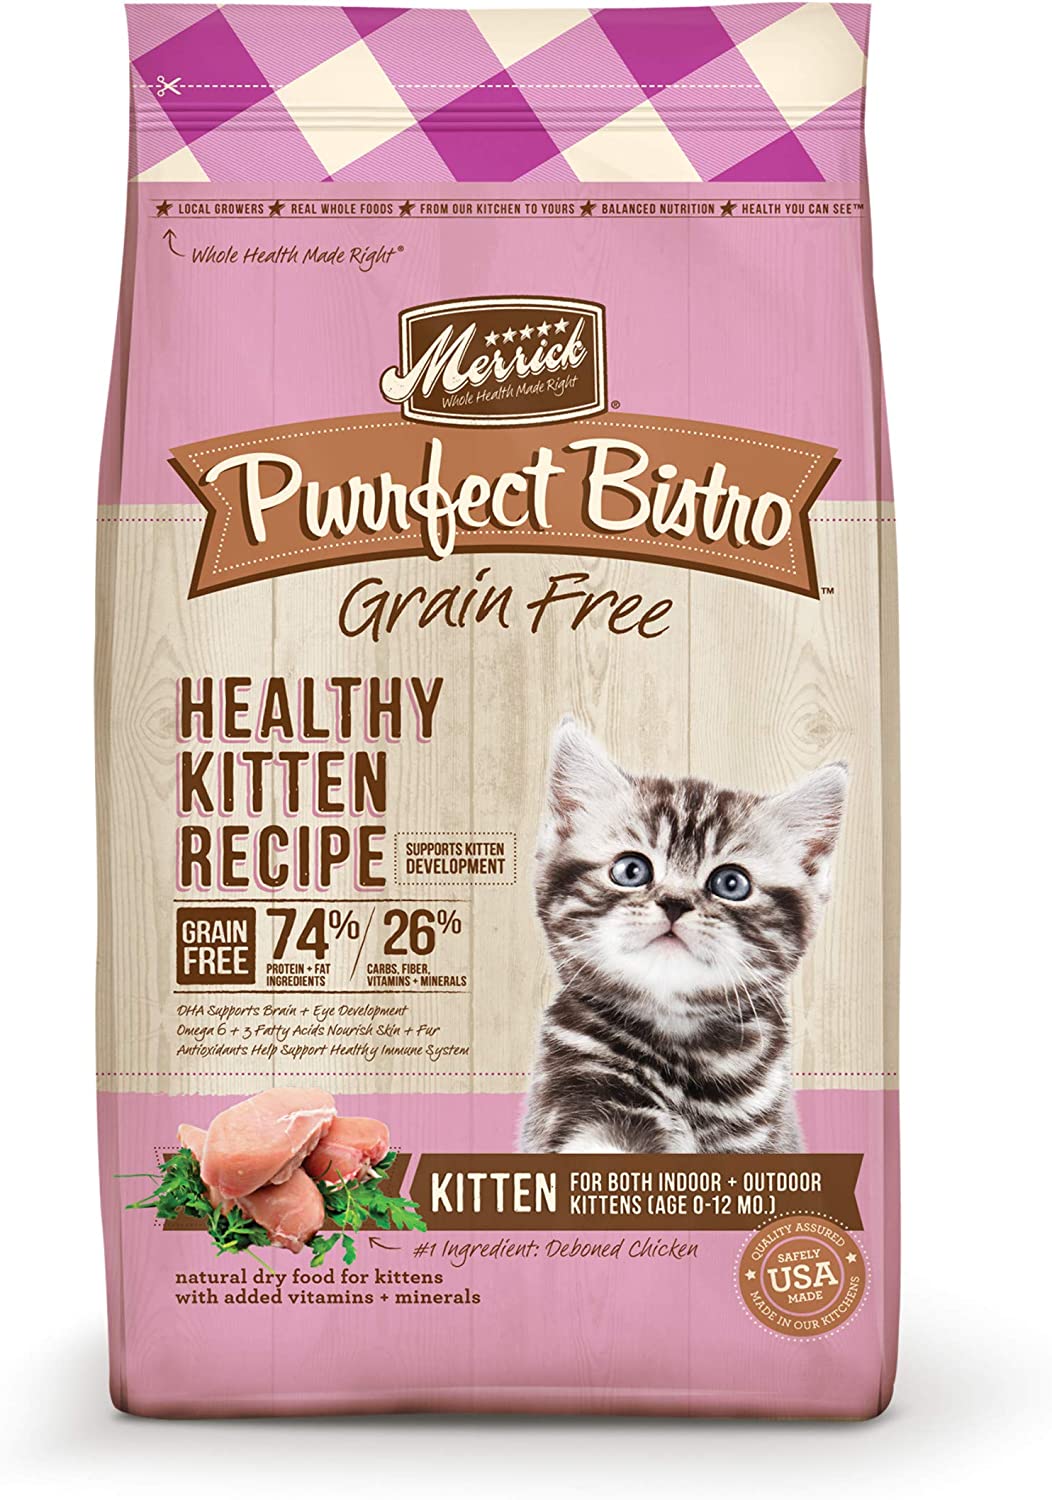 Merrick Purrfect Bistro Grain Free Cat Food, Dry Cat Food, Healthy Kitten Food Recipe - 7 lb. Bag